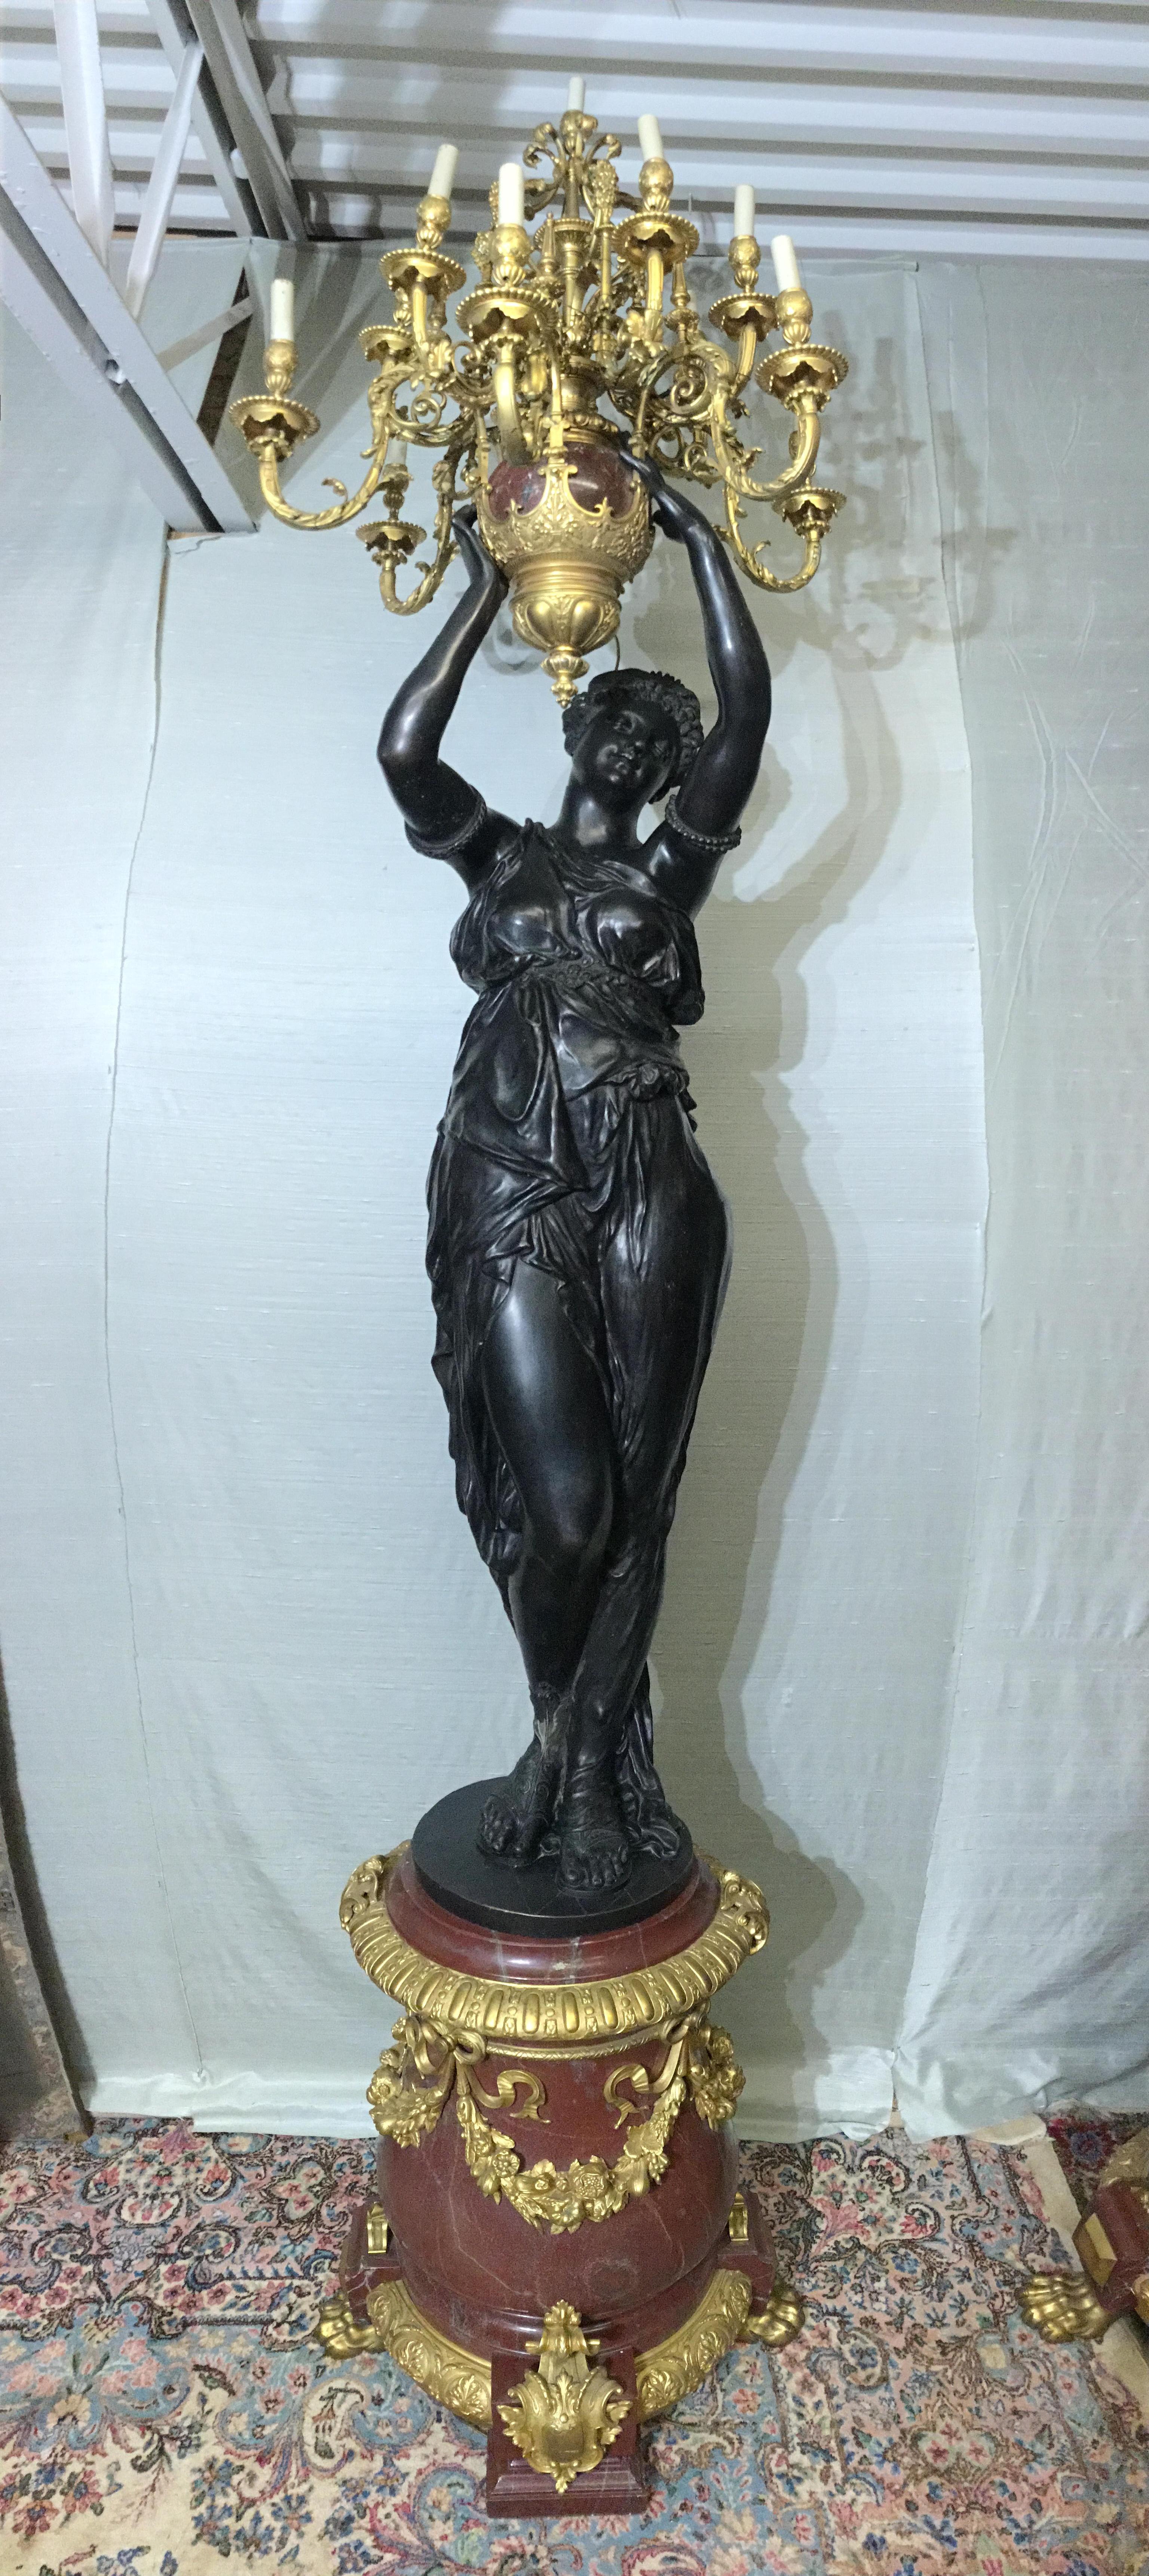 Paire d'objets en bronze patiné et marbre Rouge Griotte d'après Albert-Ernest Carrier-Belleuse (1824-1887), Paris. Chaque objet est une figure féminine drapée de style classique tenant une urne avec des branches d'acanthe, se terminant par un